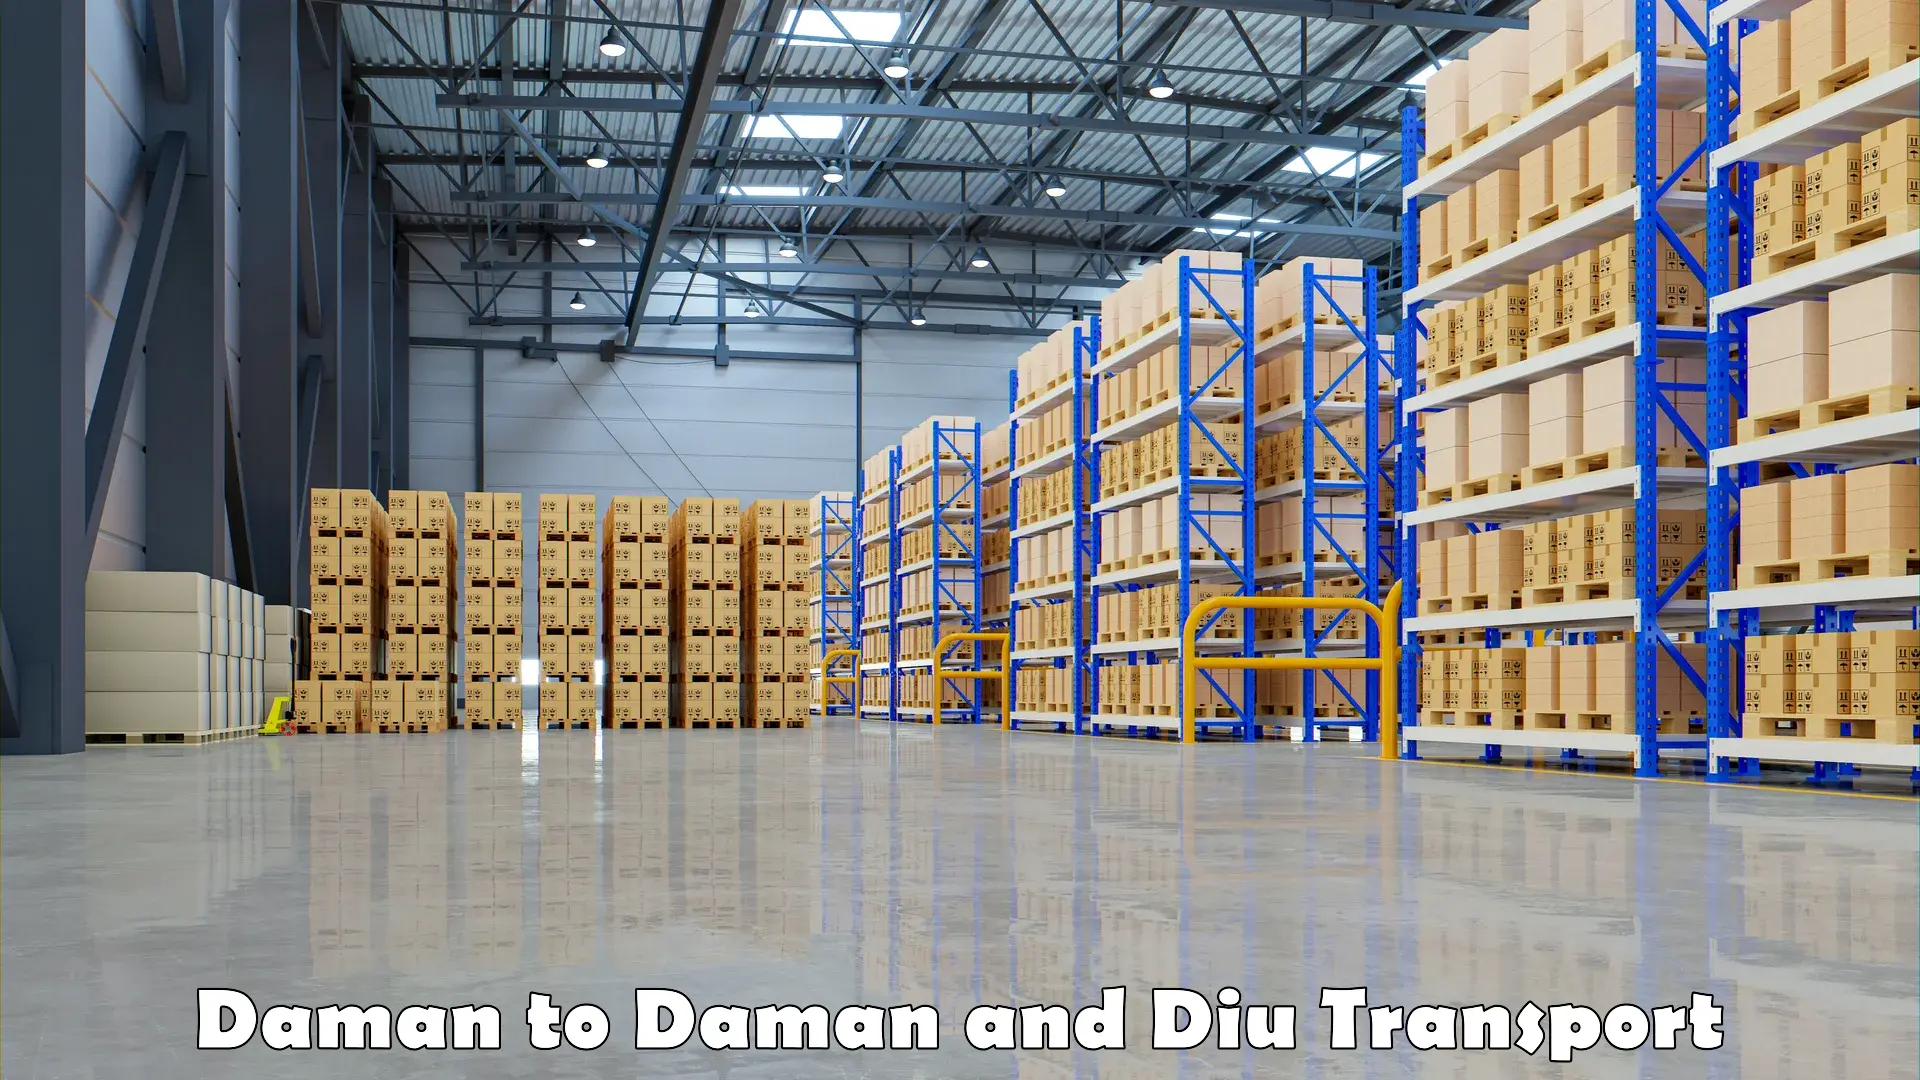 Pick up transport service Daman to Daman and Diu